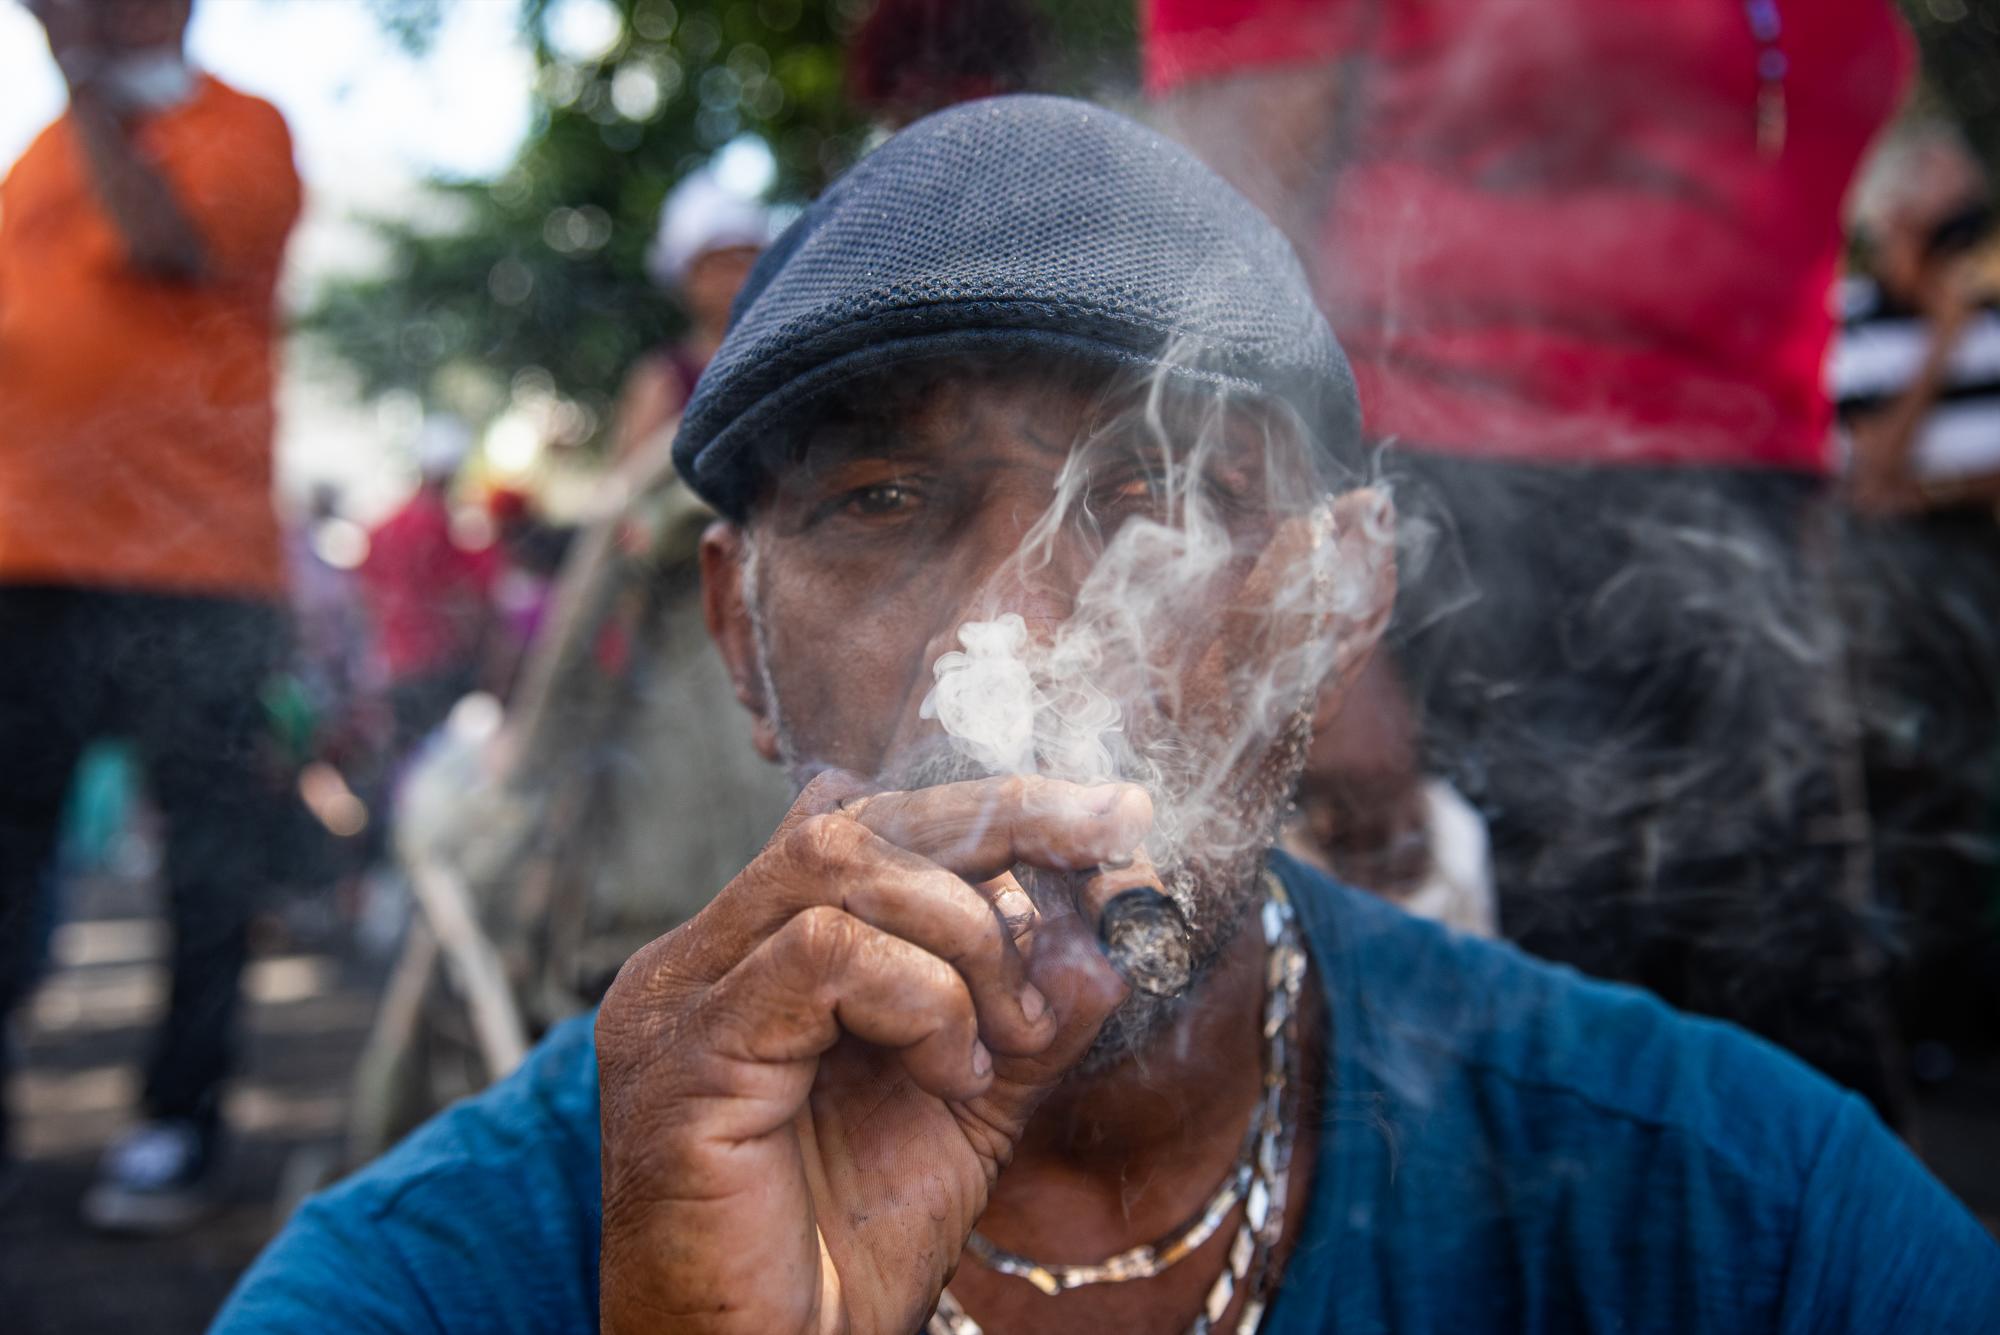 El tabaco tiene una fuerte presencia en la celebración del día de San Miguel (Foto: Dania Acevedo / Diario Libre)